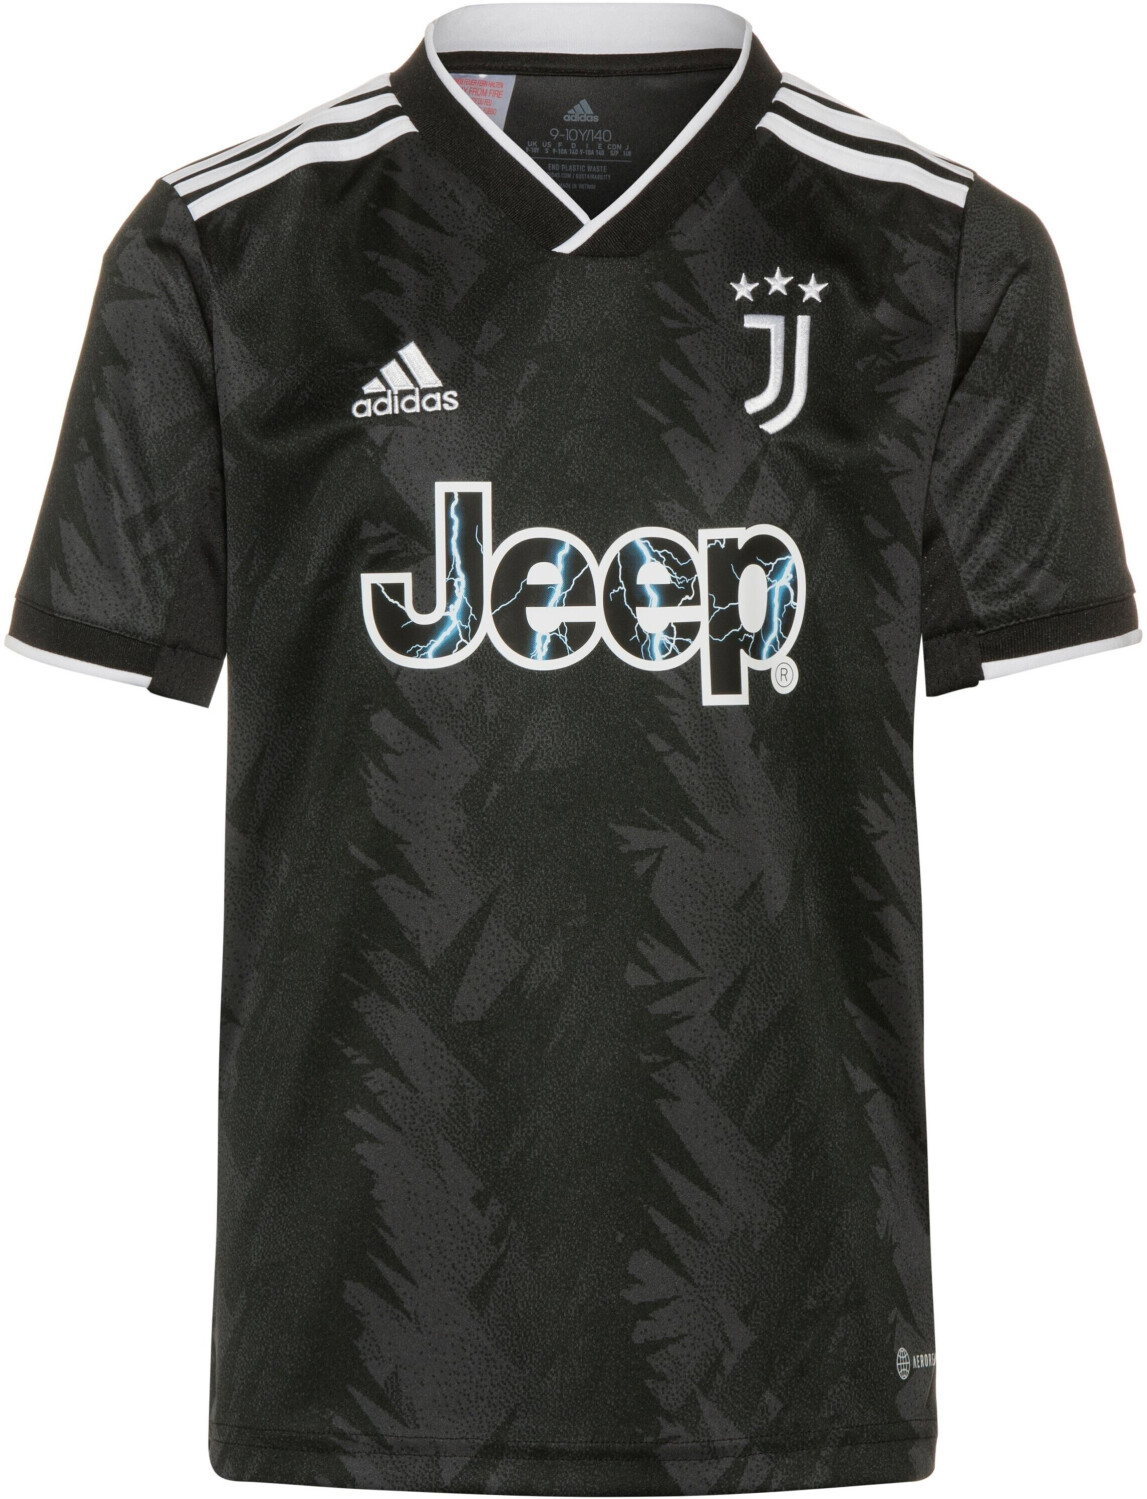 Photos - Football Kit Adidas Juventus Turin Away Shirt Youth /2023  2022